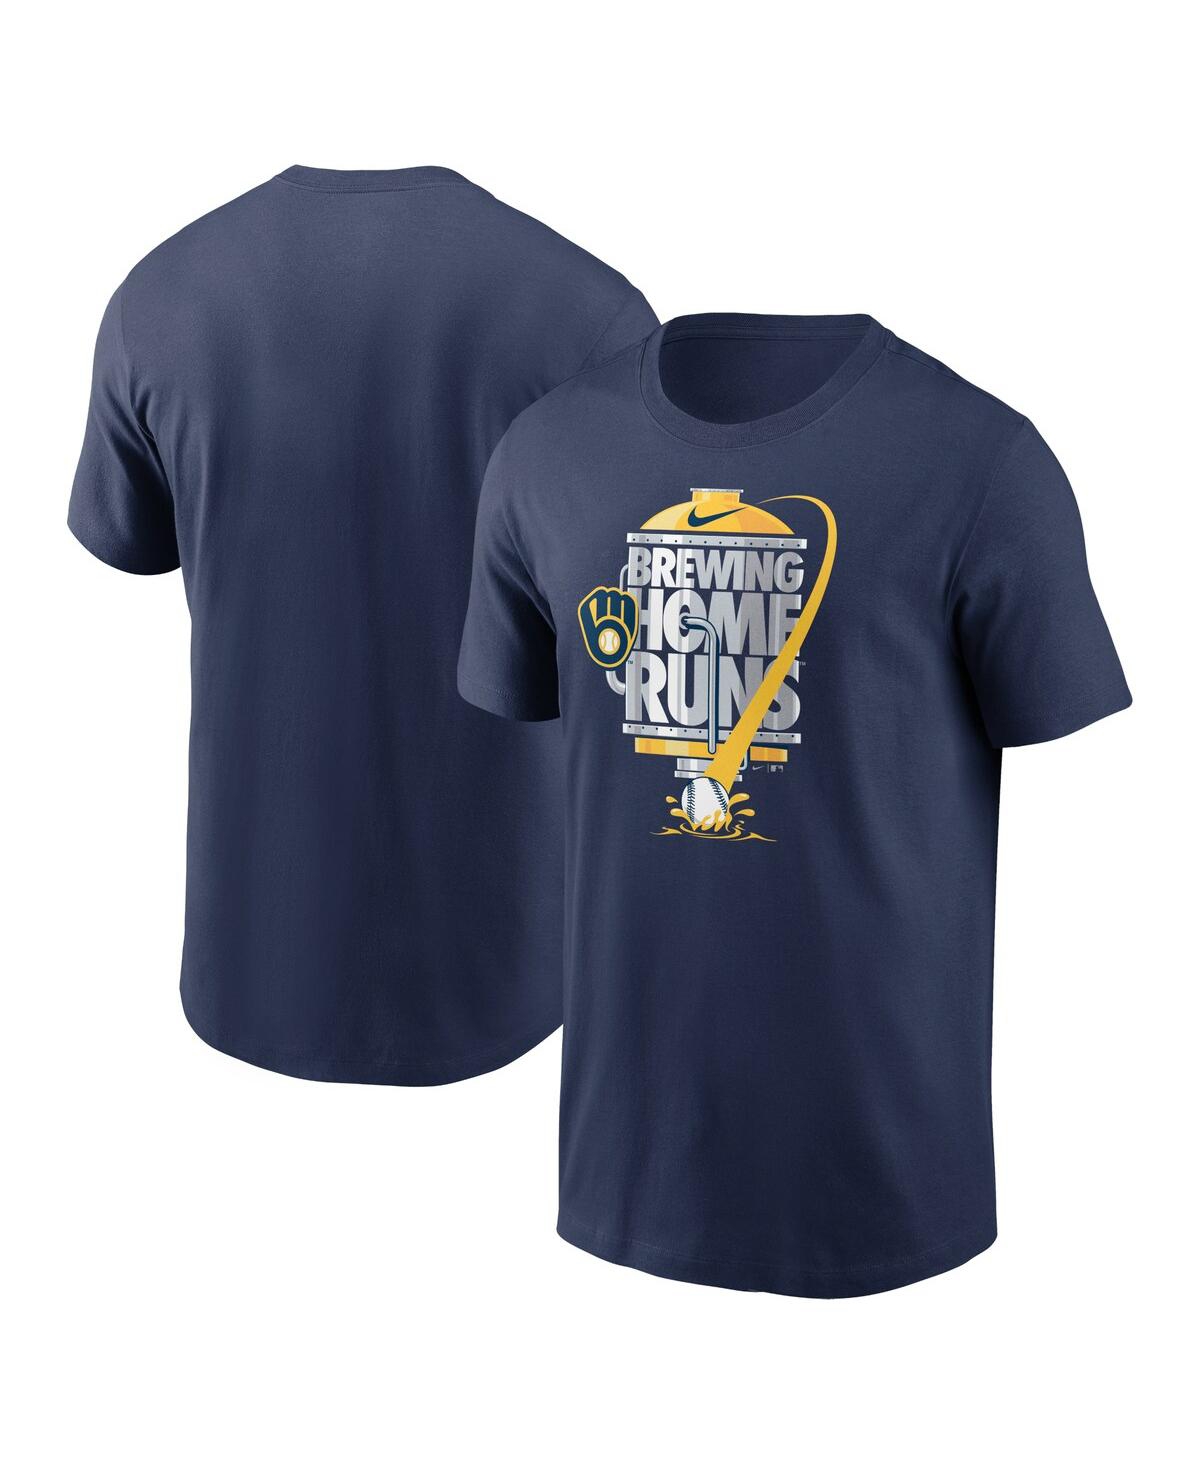 Shop Nike Men's  Navy Milwaukee Brewers Brewing Home Runs Local Team T-shirt